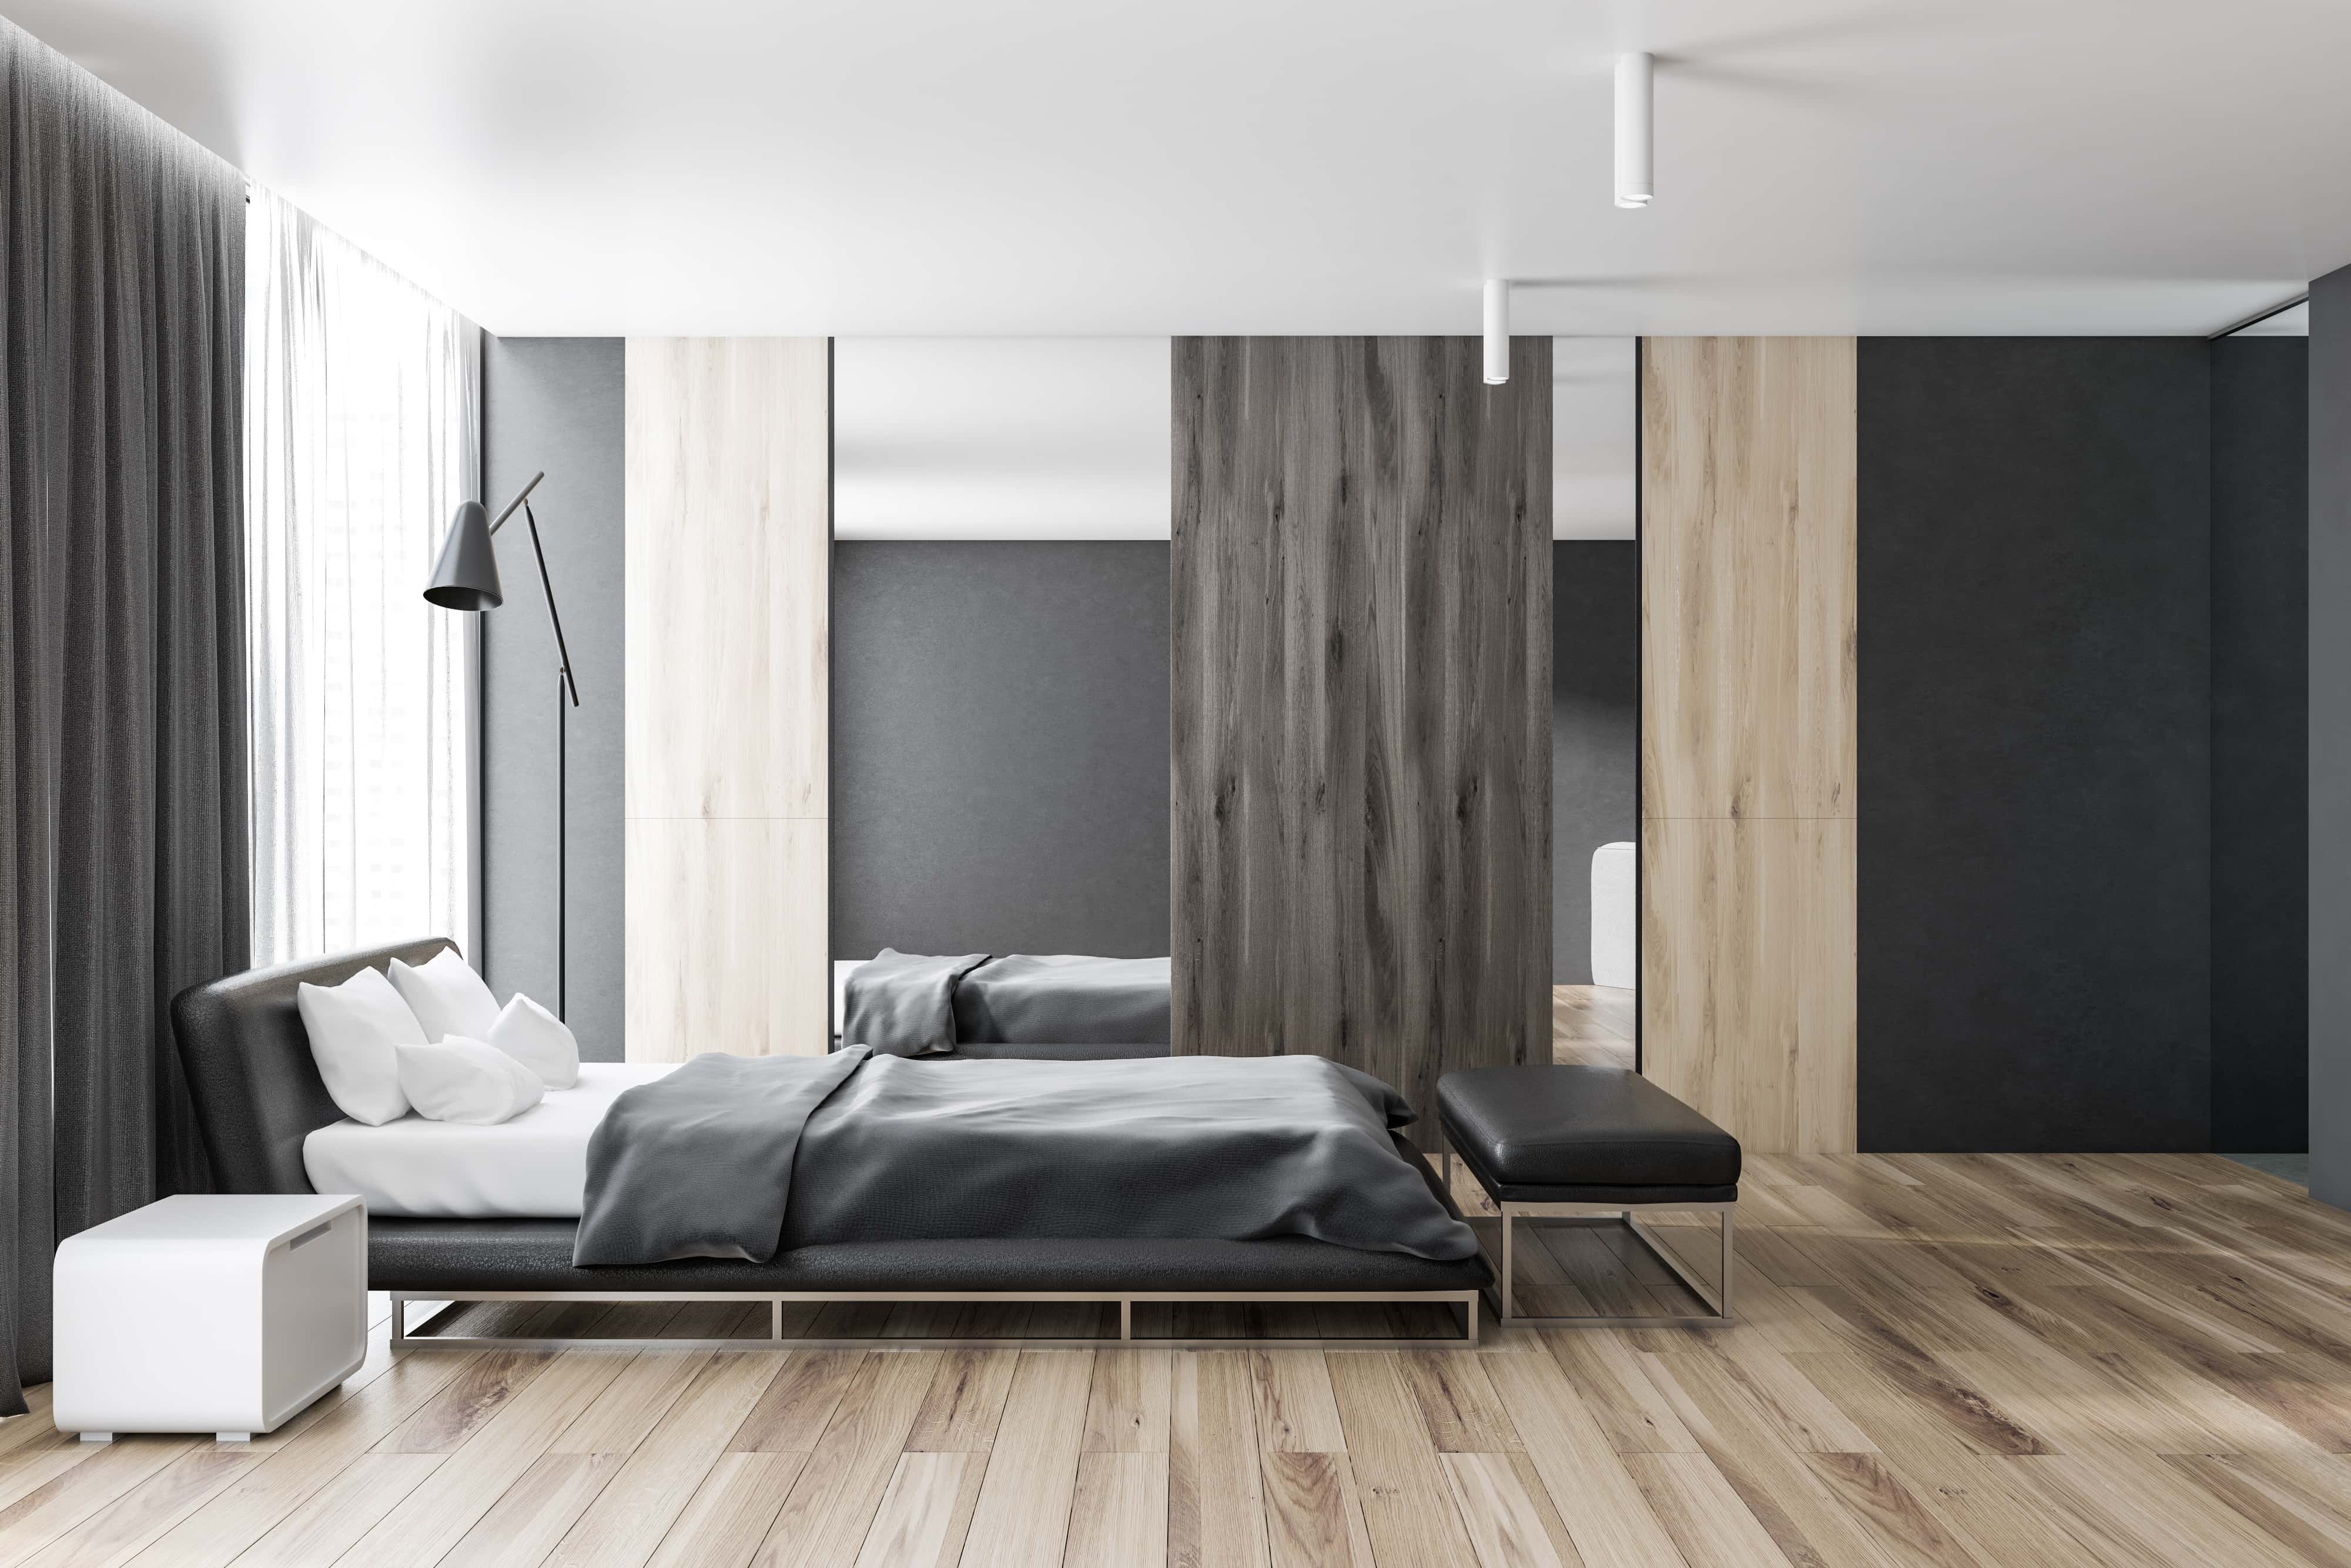 Wooden flooring for bedroom